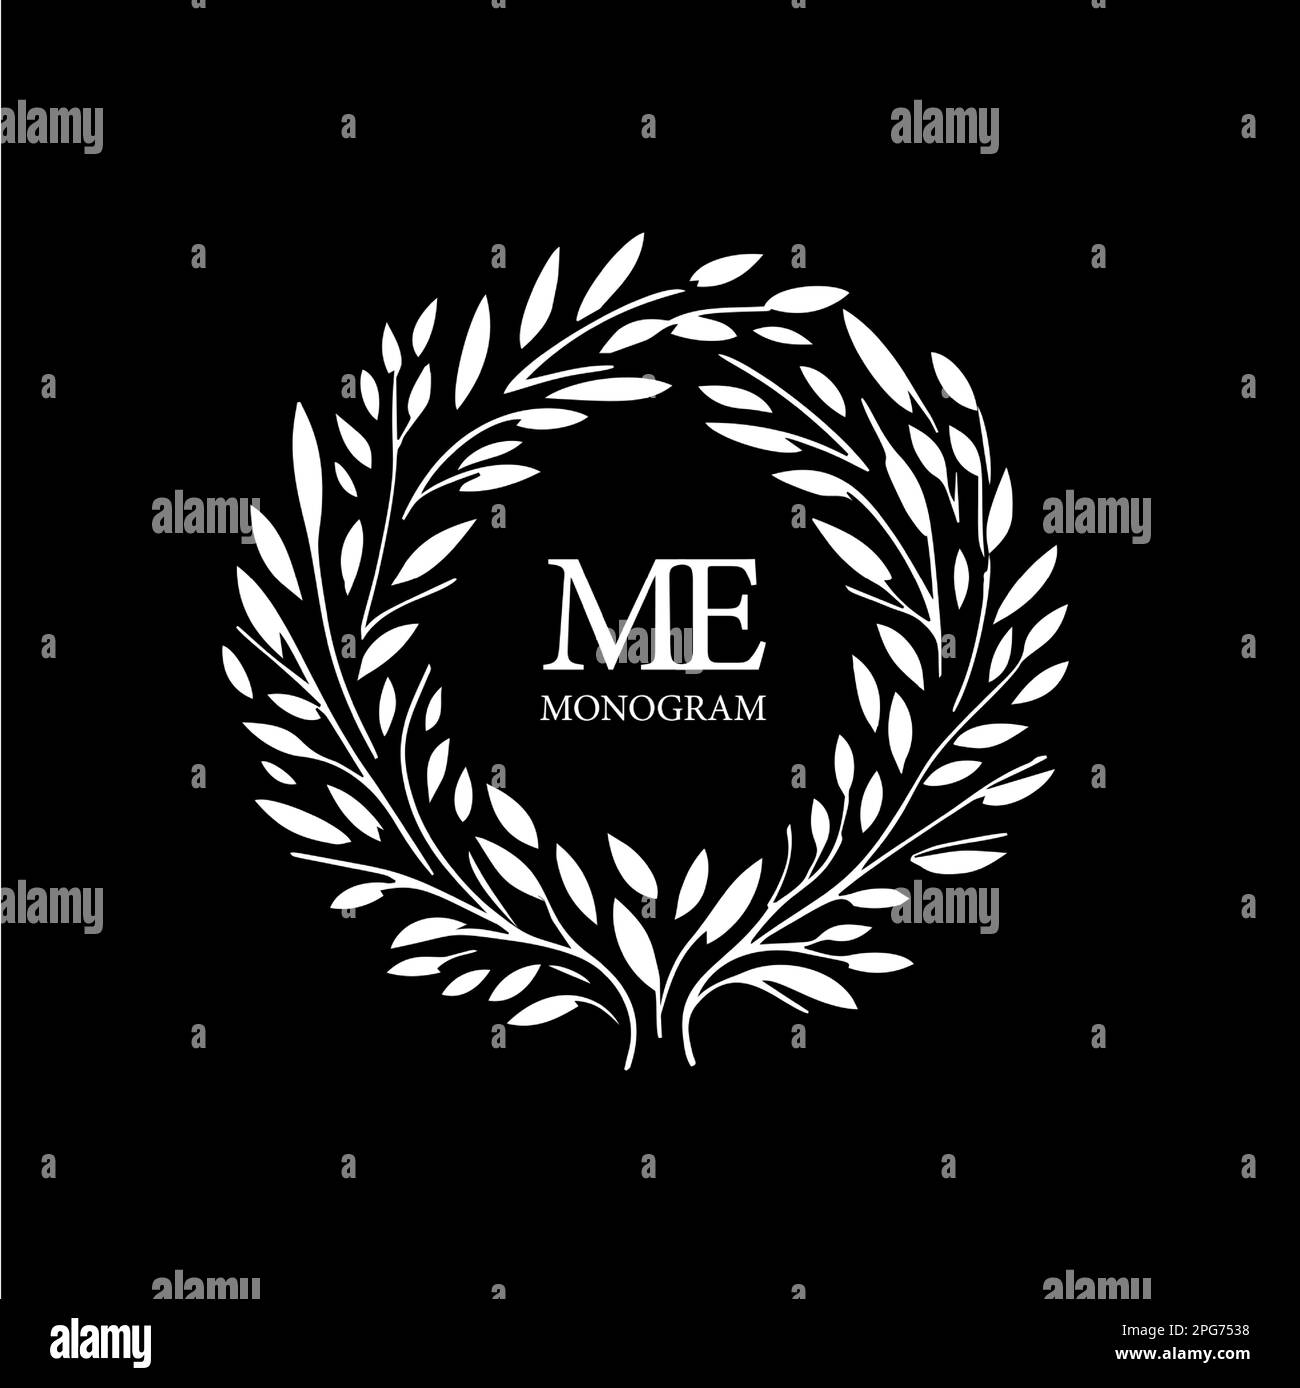 Modèle de logo de couronne Melissa, bouquet de fleurs rond avec monogramme, icône blanche, silhouette sur fond noir, concept de logotype boutique, cosmétique Illustration de Vecteur